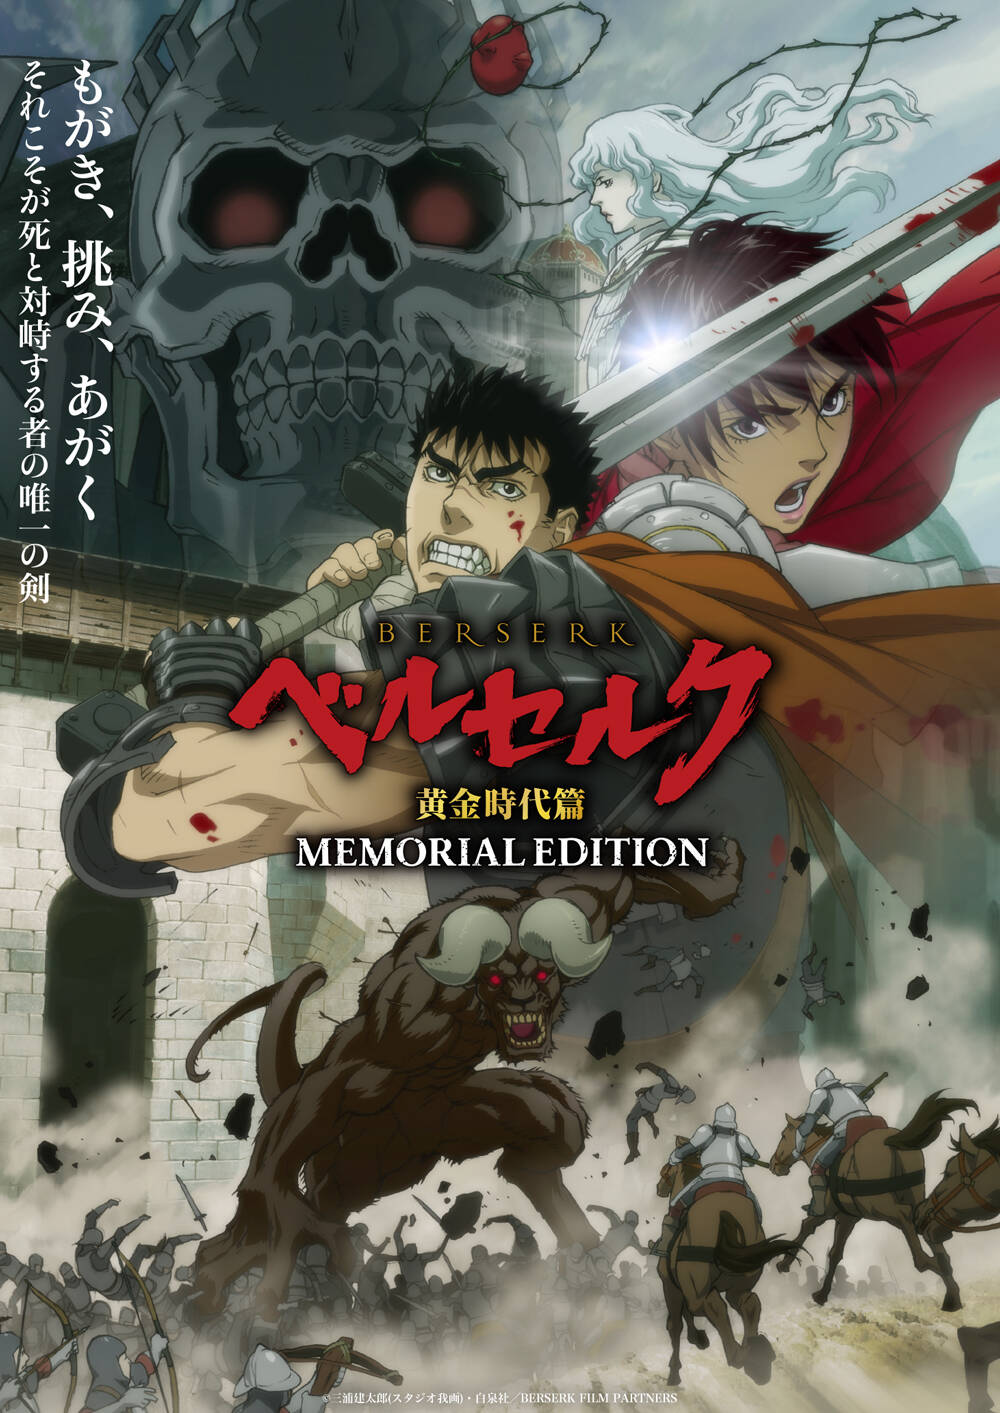 [猎户随缘压制] 剑风传奇/烙印勇士 黄金时代篇 MEMORIAL EDITION Berserk: Ougon Jidai-hen – Memorial Edition [13] [END] [1080p] [简中内嵌] [2022年10月番]